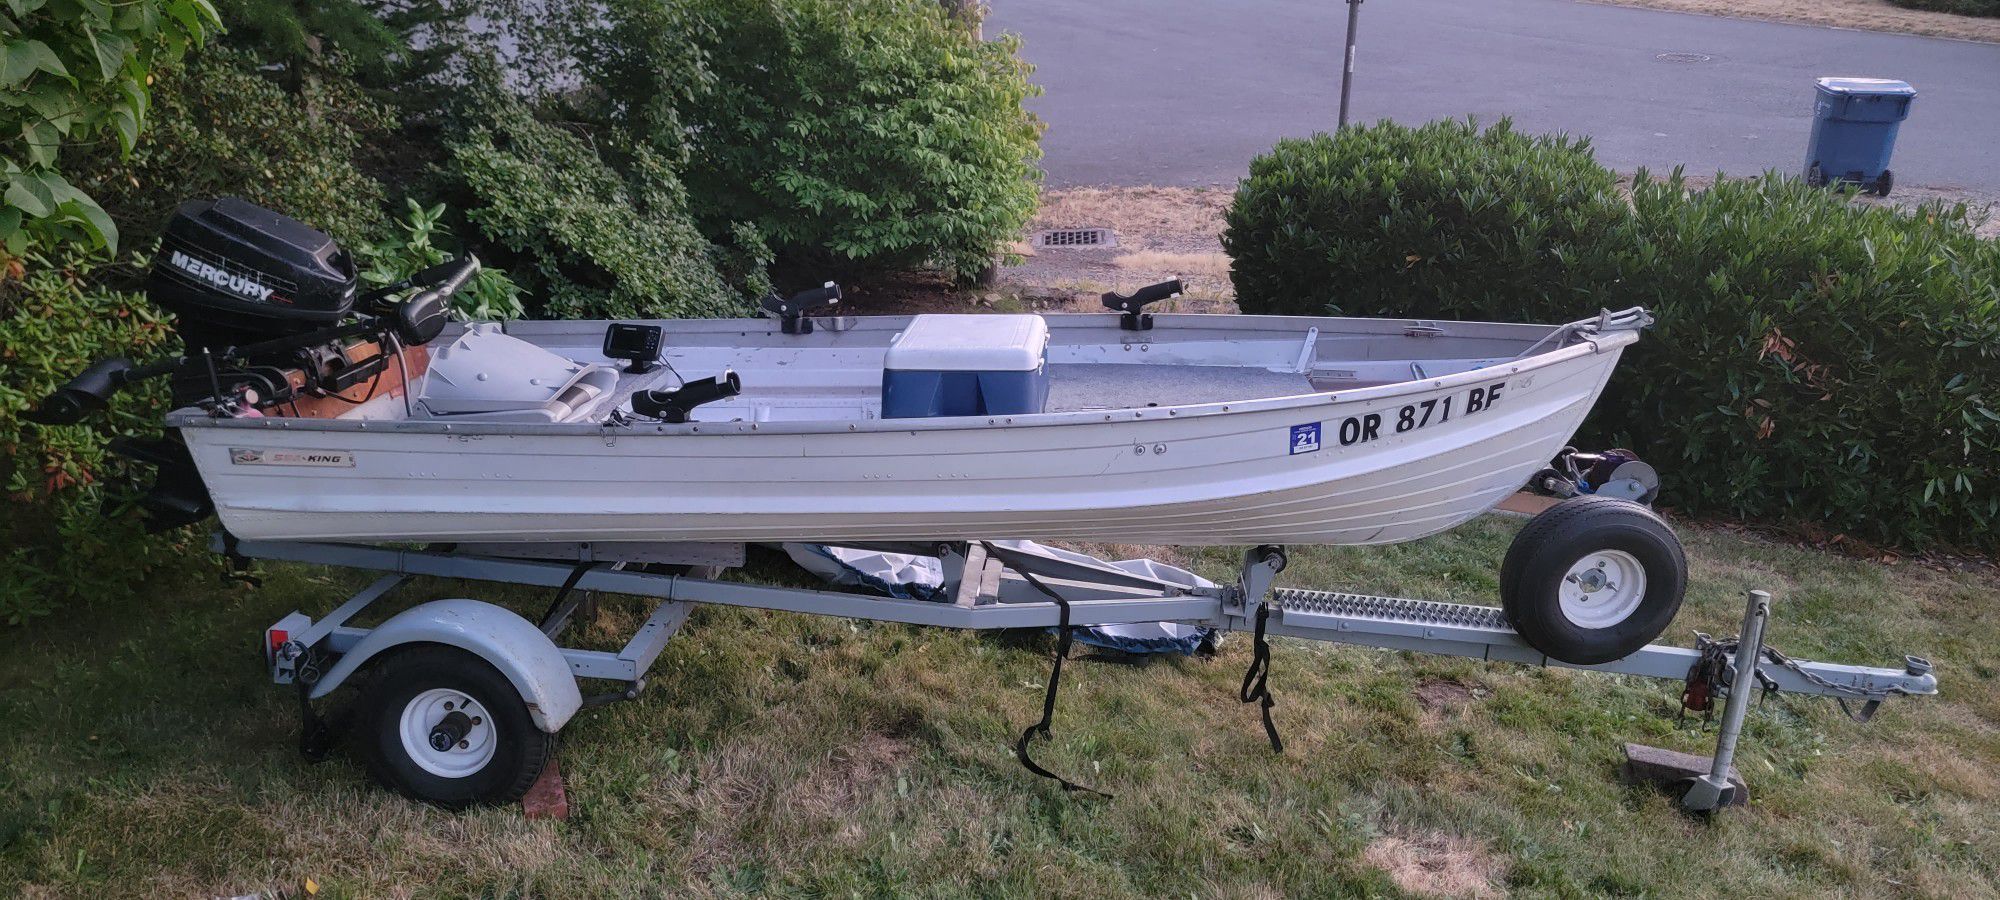 12 Foot Aluminum boat with Mercury 9.9hp 2-stroke